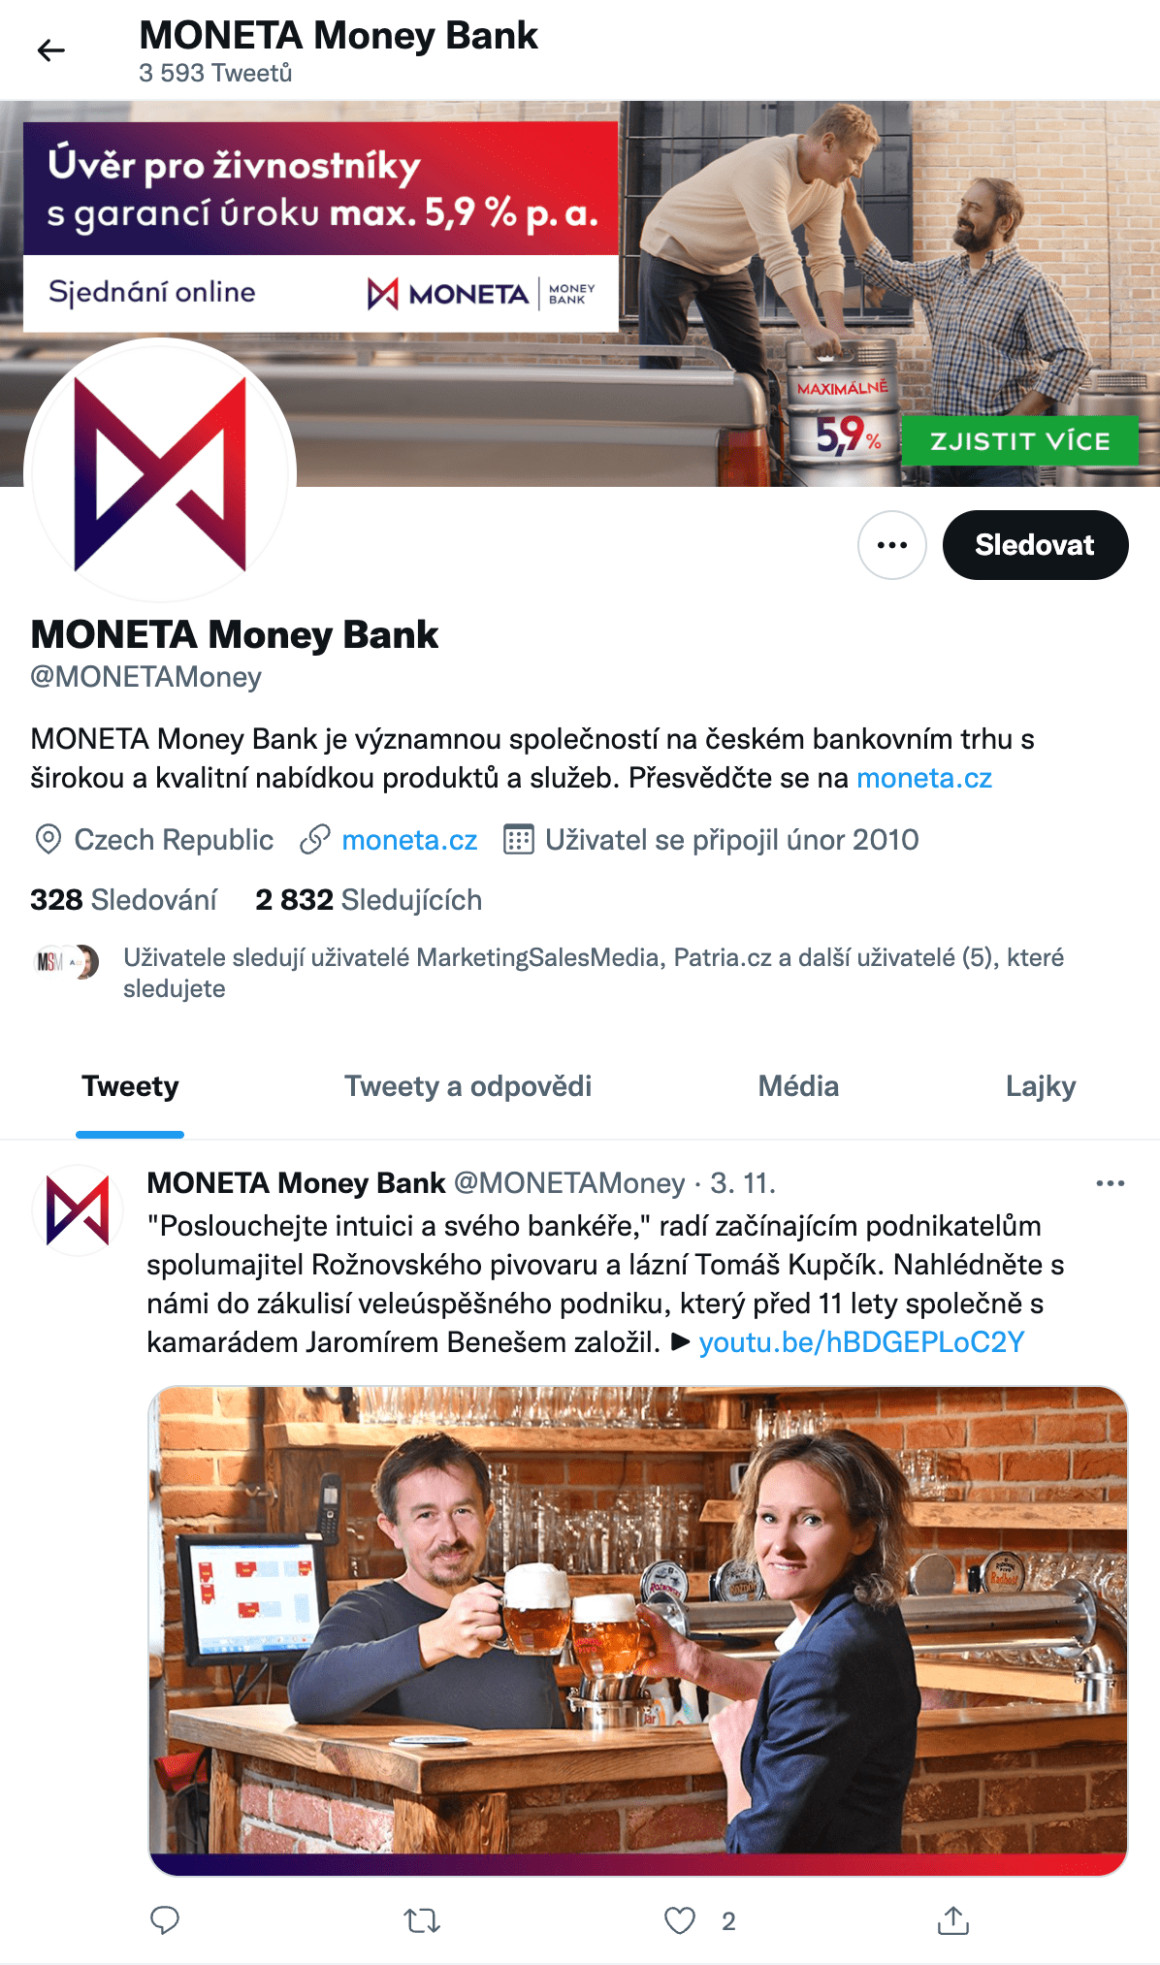 Moneta Money Bank má povedený Twitter profil. Je aktuální, informuje, přesměrovává. Určitě neuděláte chybu, pokud se budete inspirovat profilem Monety.